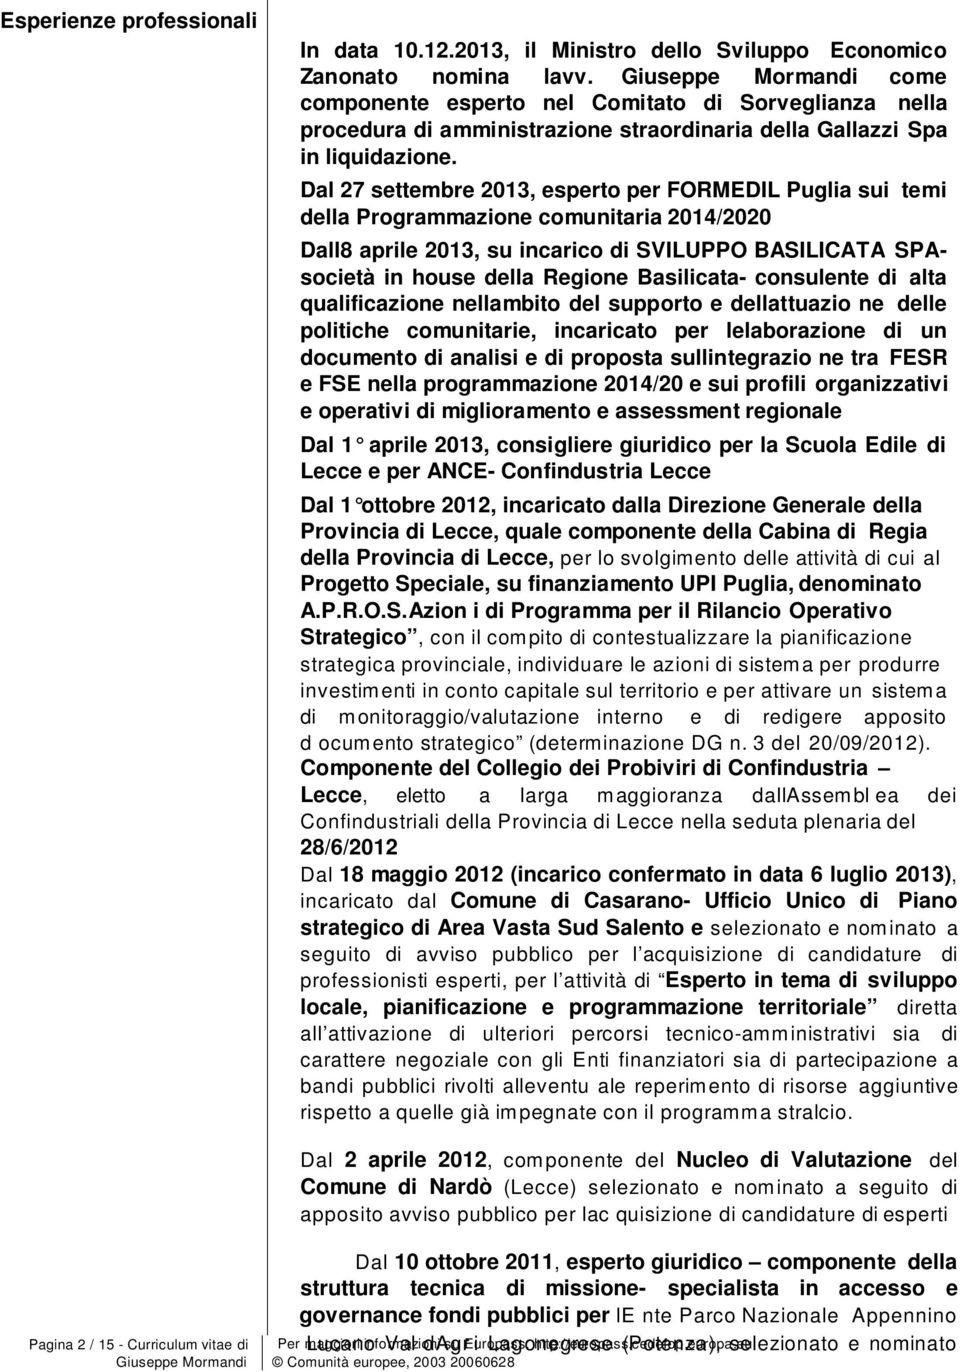 Dal 27 settembre 2013, espert per FORMEDIL Puglia sui temi della Prgrammazine cmunitaria 2014/2020 Dall8 aprile 2013, su incaric di SVILUPPO BASILICATA SPAscietà in huse della Regine Basilicata-